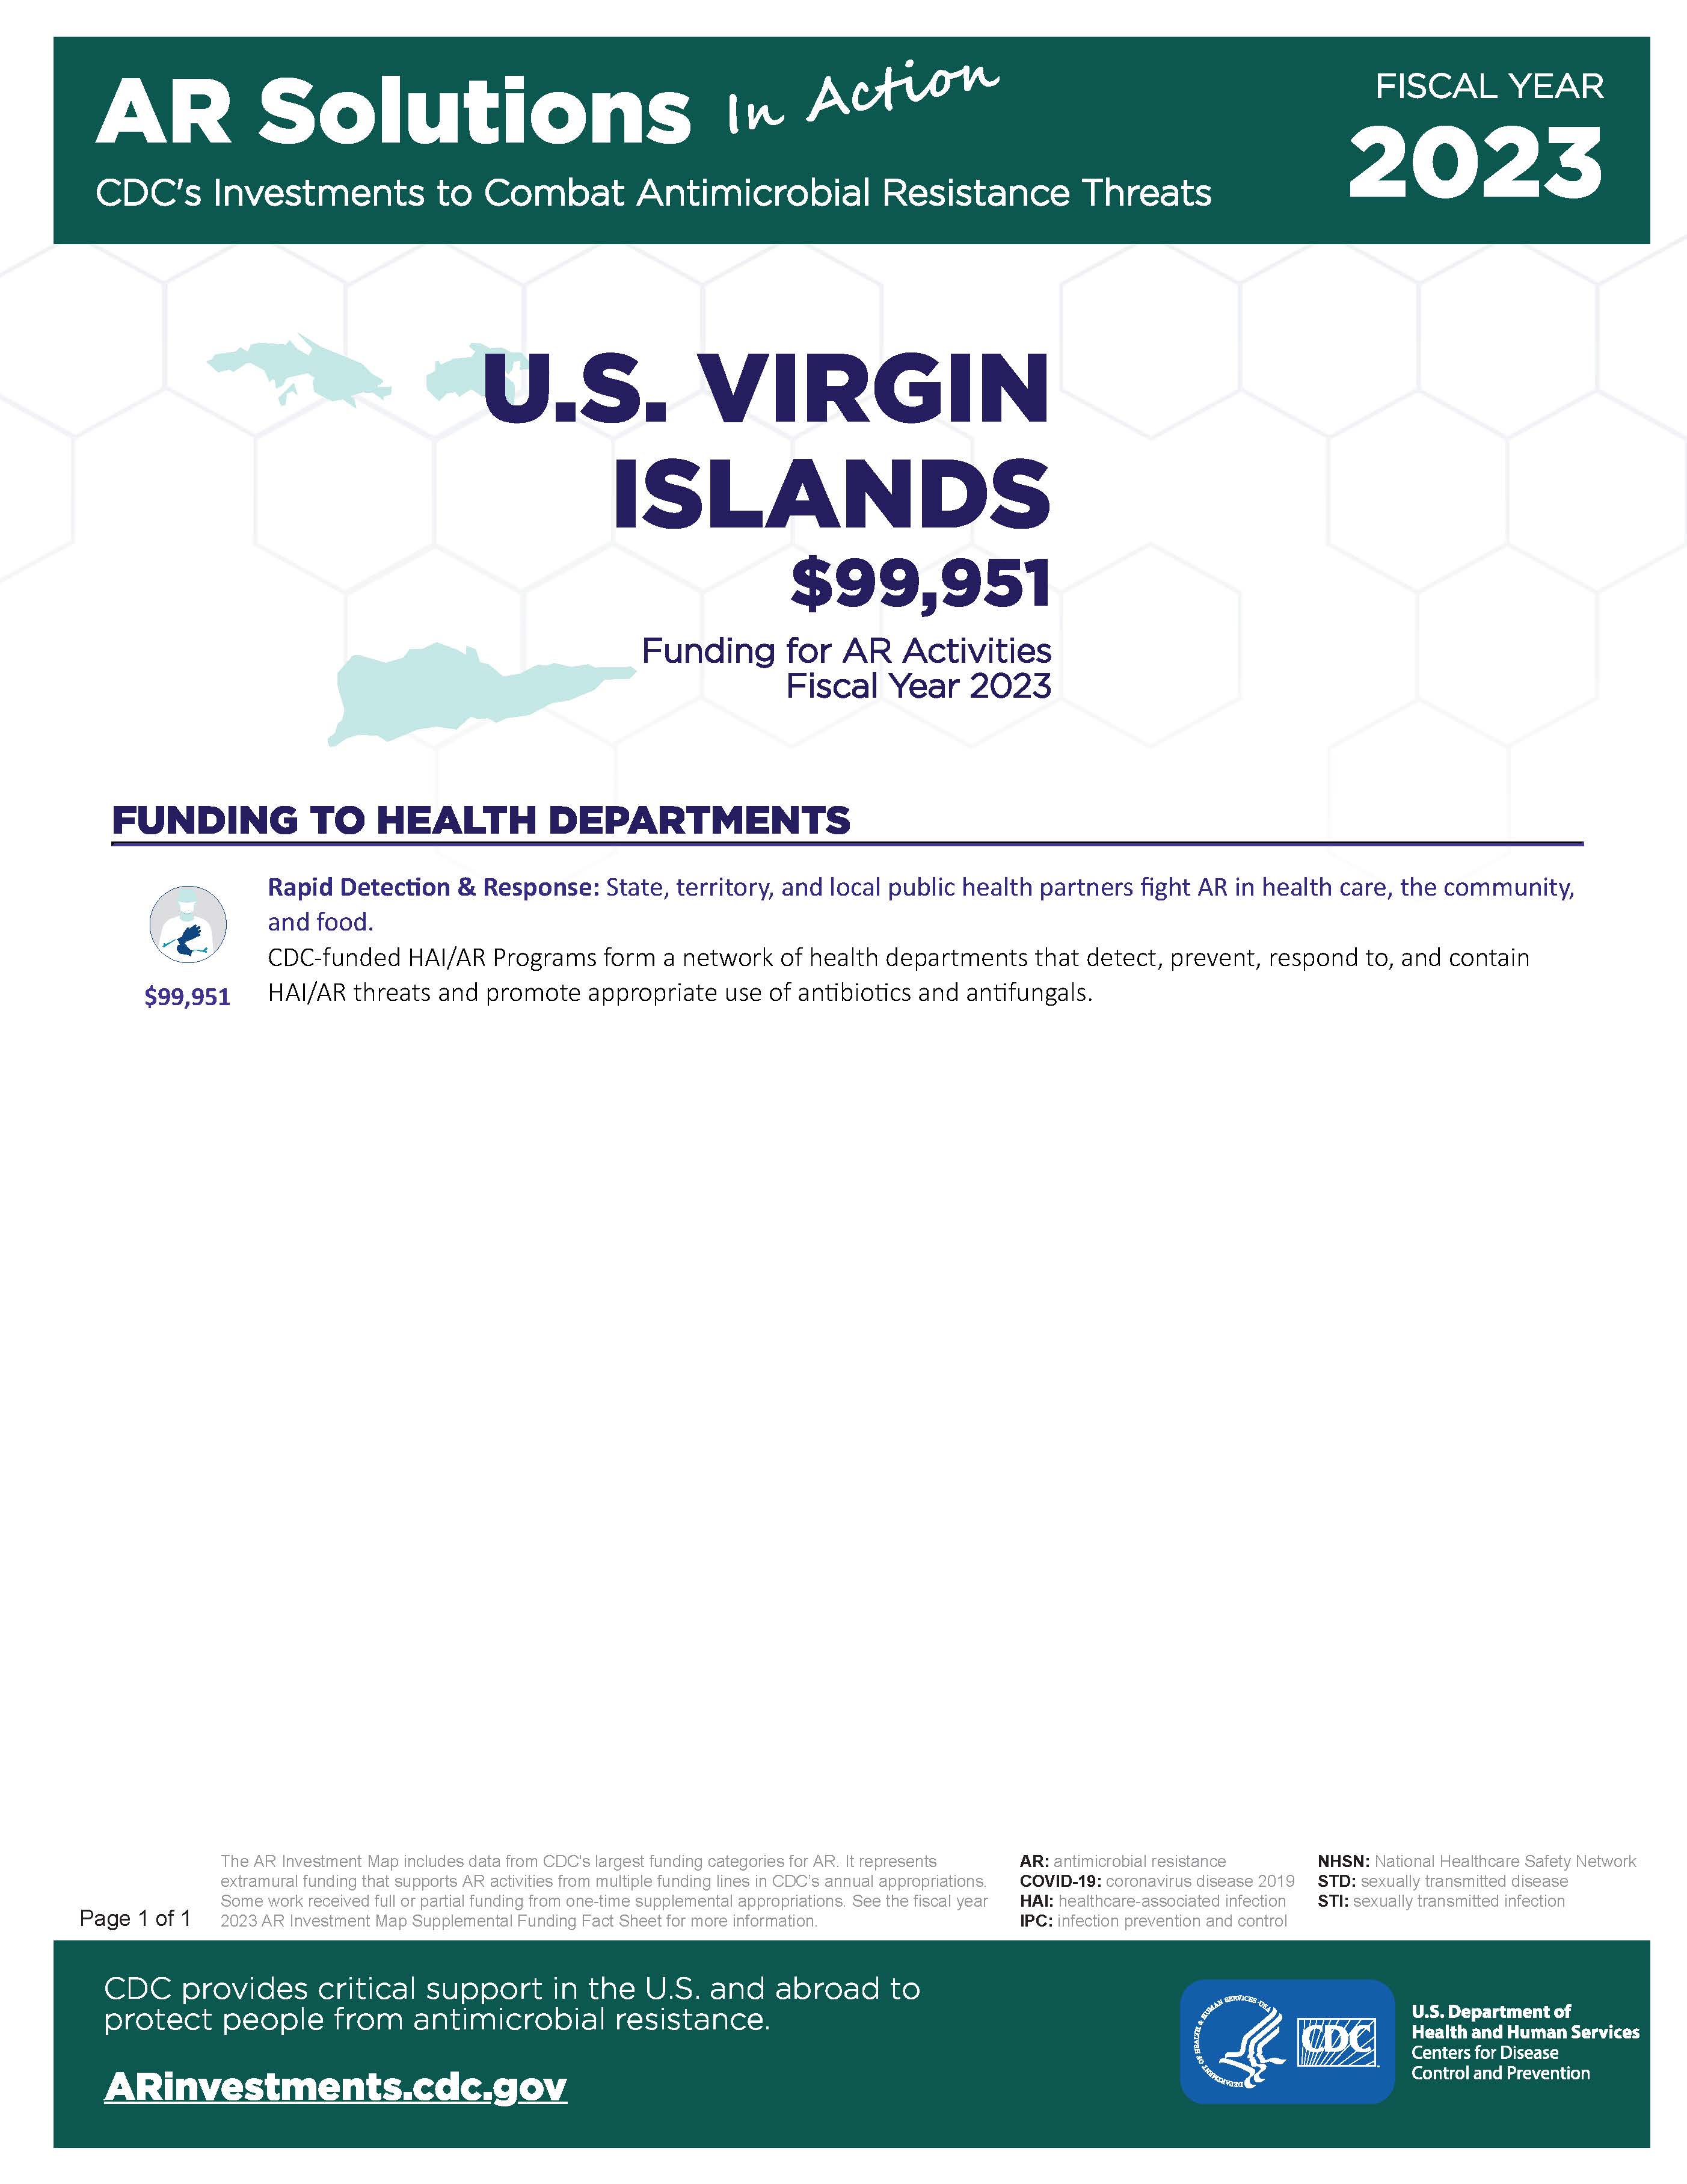 View Factsheet for Virgin Islands, U.S.